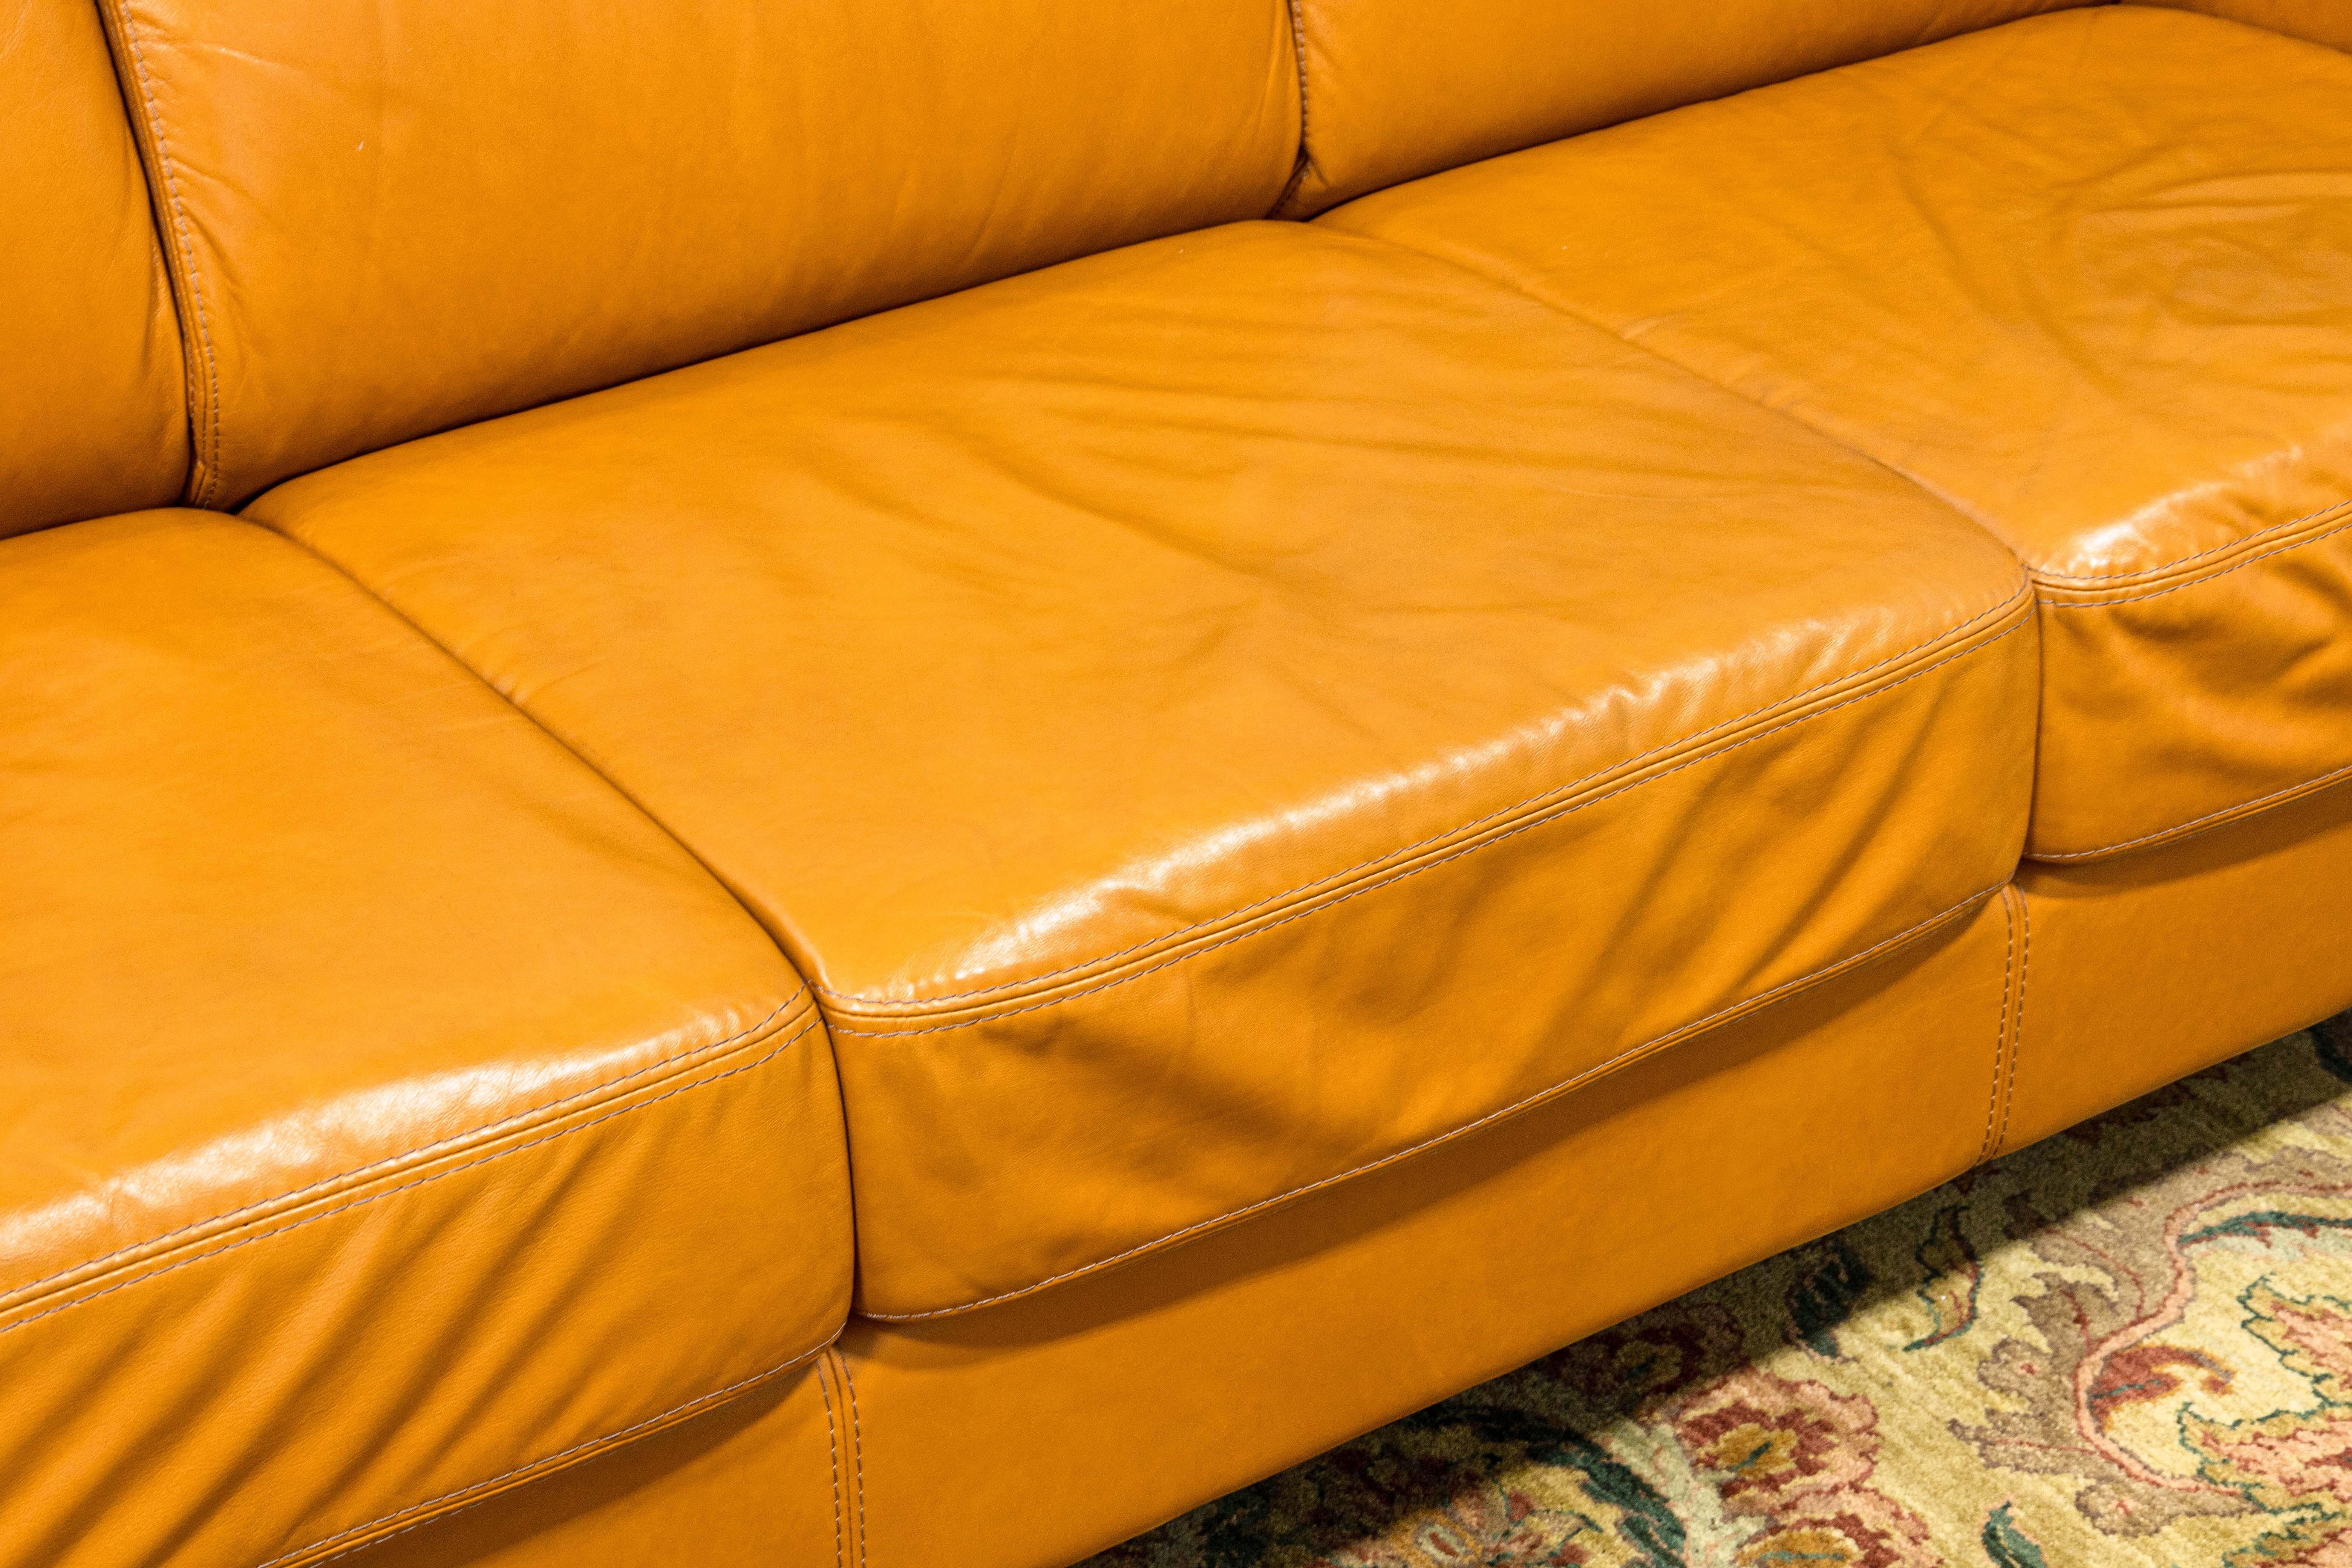 Italian Contemporary Cognac Leather Sofa by Giuliano Giusta for Collezione Divani